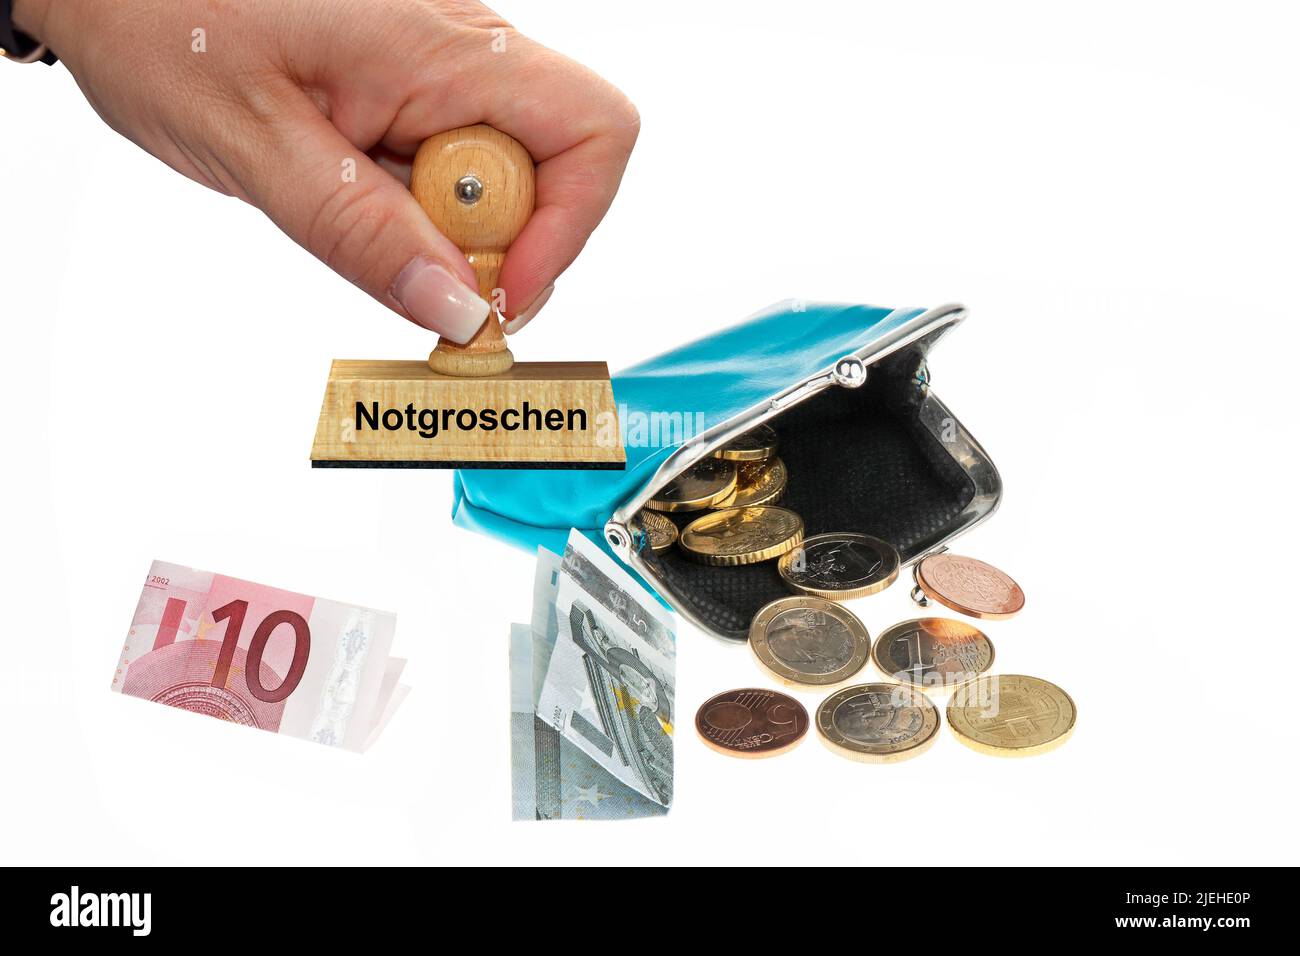 Eine Geldbörse mit Euro-Geldscheinen und Münzen, Notgroschen, Armut, Mindesteinkommen, Pleite, Stock Photo